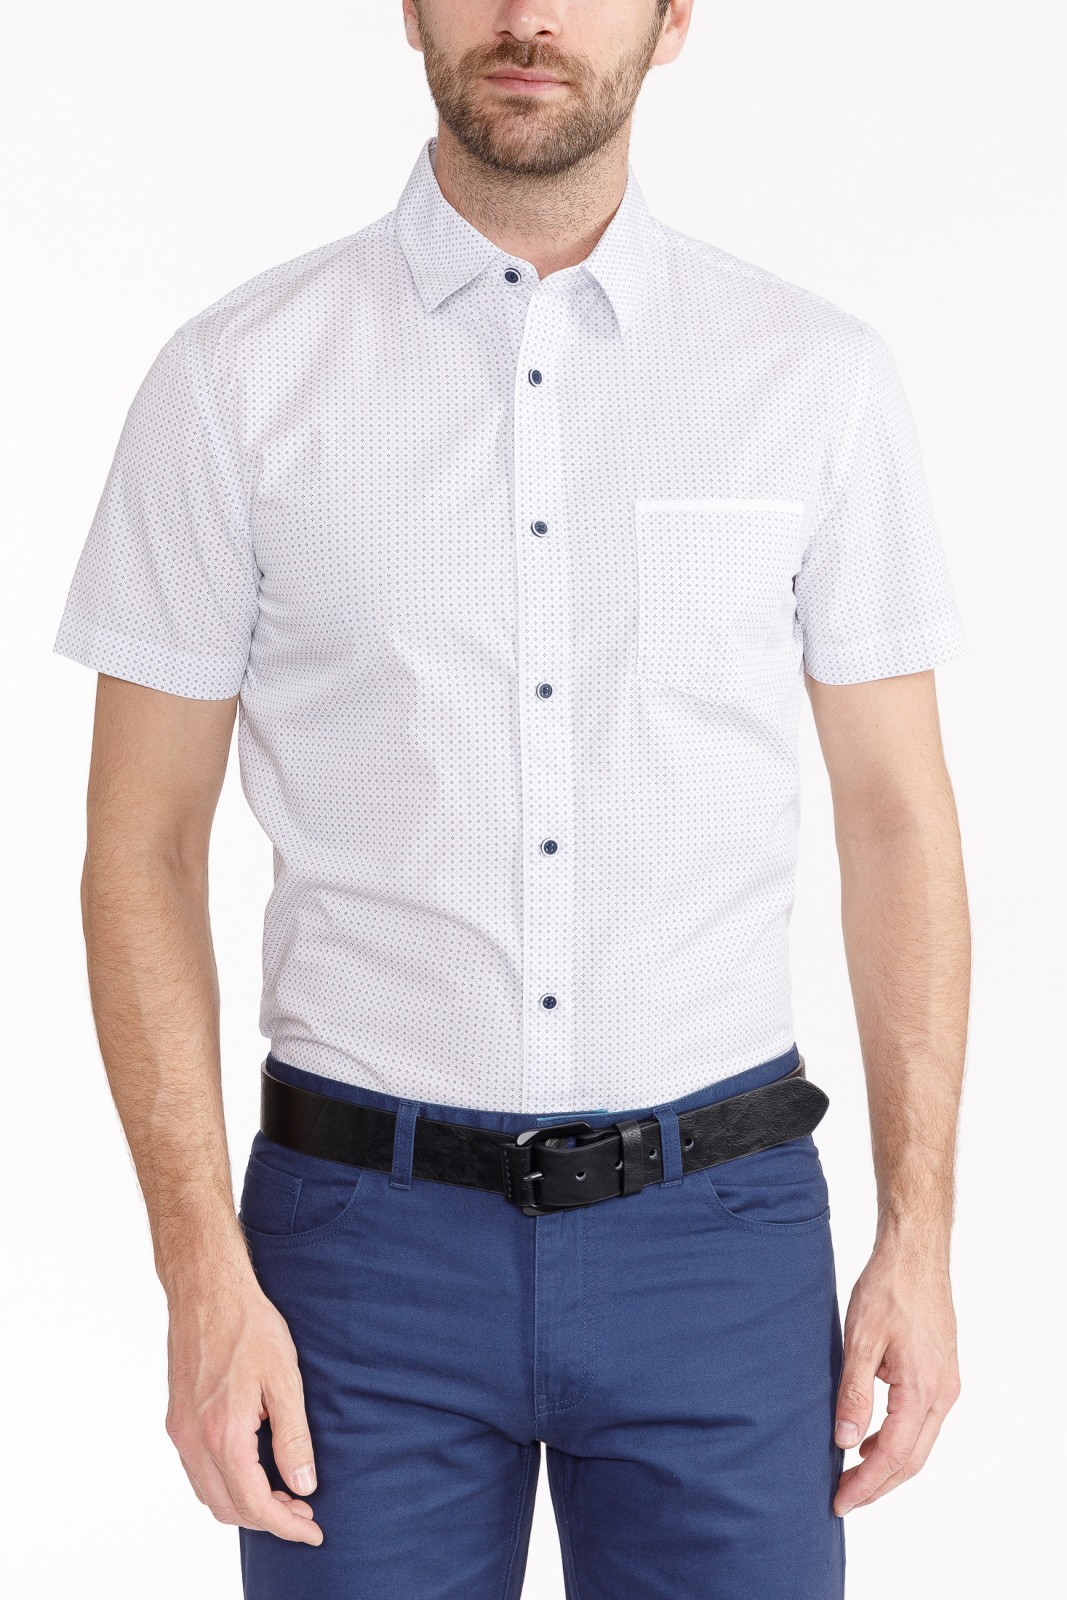 Рубашка с  короткими рукавами zolla 010242259163, цвет белый, размер S